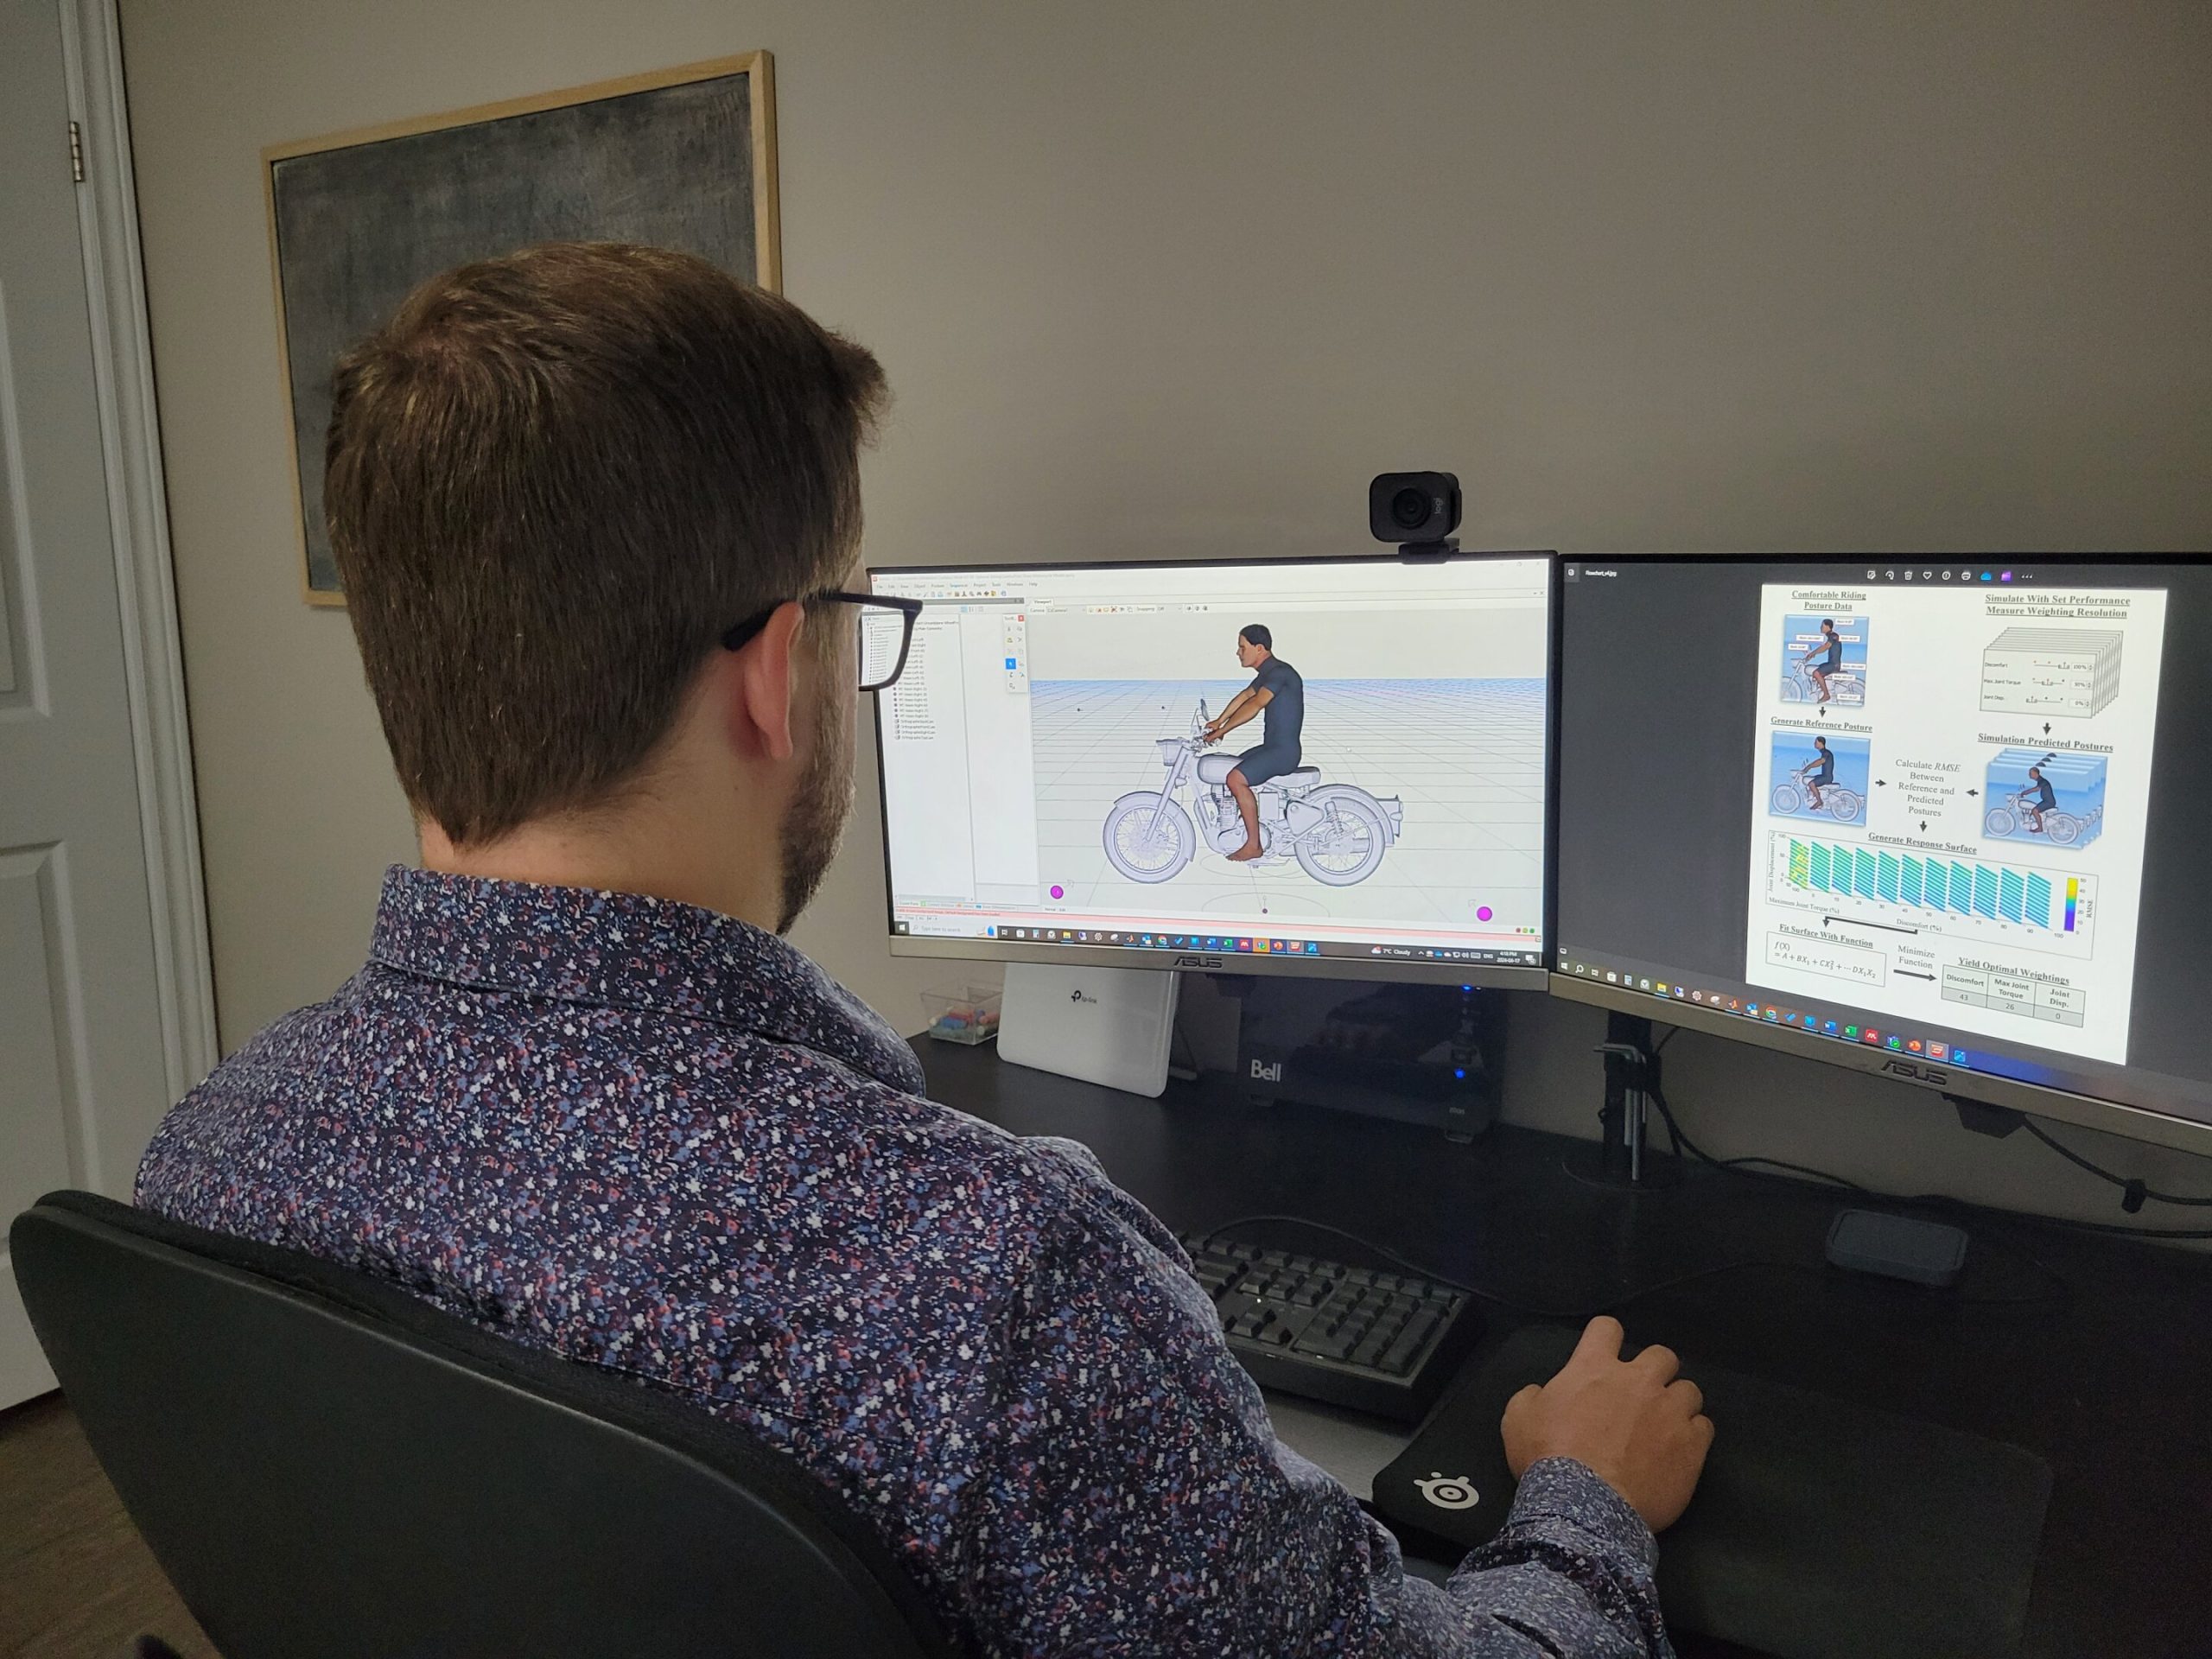 مدل دیجیتال انسان به طراحی موتورسیکلت ها بر اساس موقعیت سواری کمک می کند